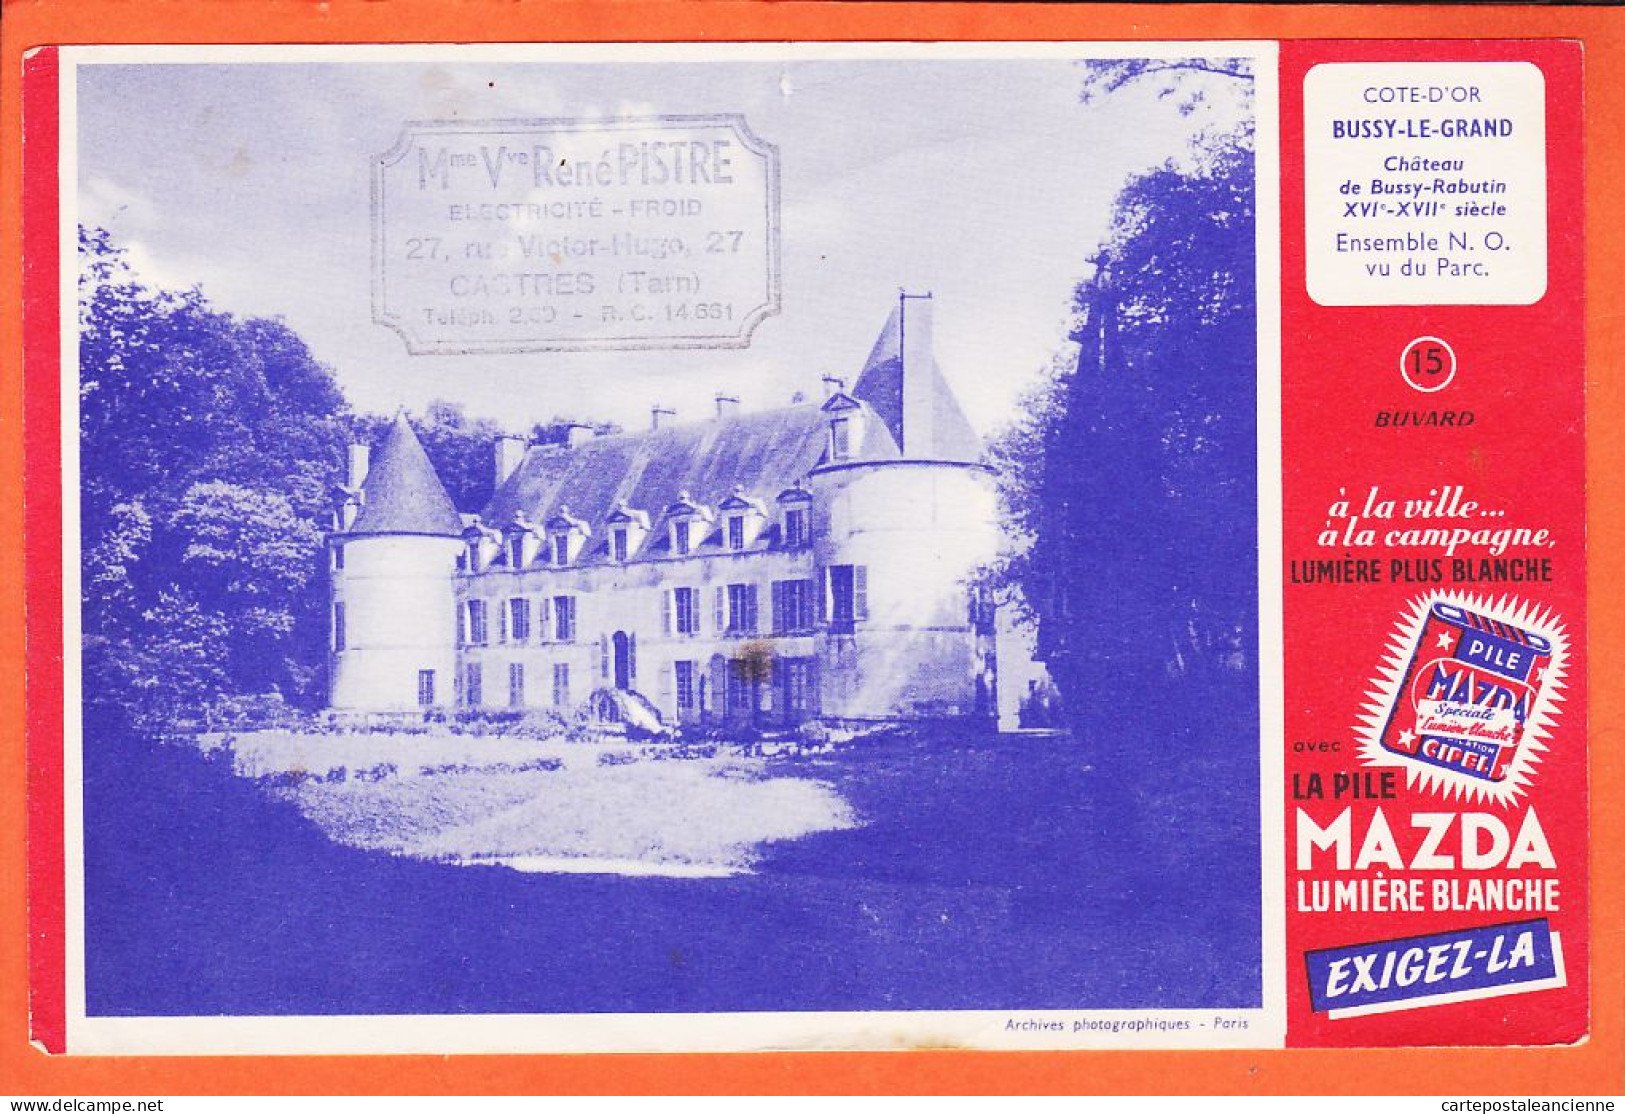 06206 / Buvard N°15 Pile MAZDA Lumière Blanche BUSSY-LE-GRAND 21-Cote D'or Chateau RABUTIN Ensemble N.O Vu Du Parc  - Batterijen